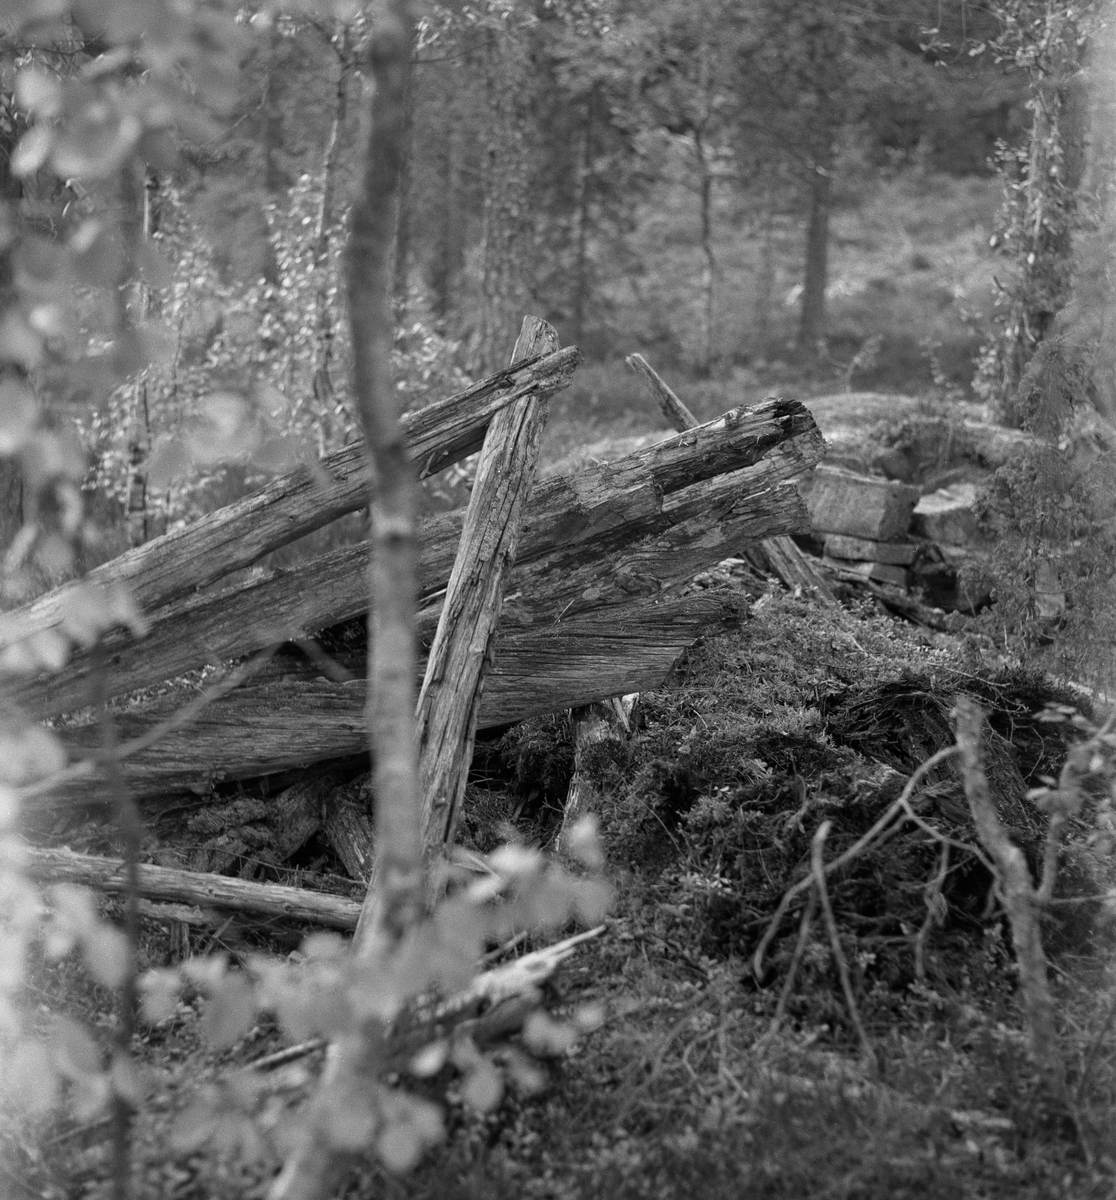 Sammenrast jordkoie - såkalt kjøyte - fotografert i Brakandalen i Kviteseid kommune i Telemark sommeren 1963. På dette tidspunktet var det bare et sammenrast treskjelett og et tørrmurt ildsted som viste at dette hadde bodd skogsarbeidere her.

Kjøyta var en enkel koietype, nesten utelukkende bygd av materialer som fantes i skogen og så enkelt konstruert at skogsarbeidere uten bygningsteknisk kompetanse kunne få den ferdig på kort tid. Jørund Midttun (1887-1969), som kom til Telemark som ung forstkandidat i 1914 og ble en sentral skikkelse i skogbruket der gjennom hele sin yrkeskarriere, beskrev dette slik: 

«Framgangsmåten med oppsettinga var gjerne slik at når tre-fire hoggarar hadde teke hogst saman eller nær kvarandre, drog dei til skogs frå morgonen av, og dei rakk då å setta opp ei slik kjøyte på ettermiddagen.

Kjøyta var bygd av «props». Det var smale stokkar som vart reist opp på ei rund eller firkanta tuft nedantil. Oppe gjekk stokkane saman i topp, og kjøyta vart som eit spisstelt å sjå til. … Det var heller ikkje uvanleg at kjøyta vart sjåandes ut som ein avslutta pyramide. Slik er den Skogbruksmuseet har på Prestøya [SJF-B.0009] …

For å gjera kjøytene tette og varme, la dei granbork eller bjørkenever utanpå stokkane og deretter kom eit tjukt lag av torv eller jord. Ofte vart det på toppen og noko nedetter lagt ei hette av bork eller never. Til dør bruka dei ein lem av kløyvde bord eller skier. Denne vart passa inn i ein karm skrådd med hyttetaket og kunne berre opnast utetter. Ved sida av døra vart det på utsida av taket (veggen) mura ein peis. Sjølve grua var inne i kjøyta, men elles sjekk skorsteinen opp utanfor. Sengene (benk-brisk) gjorde dei vanlegvis også av smått rundvirke, litt opp frå bakken, slik at dei vart liggande med føtene mot døråpning og gruve.

Desse kjøytene var gode og varme, og her budde så vel bonden sjølv som folka hans på virkedagane når hogsten gjekk.»

Midttun skrev videre at «Slike kjøyter var vanlege over store luter av Telemark heilt fram til 1920-åra.» At det ble slutt med kjøytebygginga på denne tida hadde sannsynligvis samanheng med at Stortinget i 1915 vedtok en lov om husvær for folk og hester under skogsarbeid og fløting, som skulle følges opp med lokale vedtekter. Året etter fulgte blant annet herredsstyret i Drangedal opp med regler som poengterte at skogshusvær skulle være «tilstrækkelig rummelig i forhold til arbeidernes antal», og at de skulle være «forsynt med tætte, gode gulv og vægger, godt, drypfrit tak, god og tæt dør og vindu, hylder og sovebrisk, anbragt mindst 40 cm. over gulvet, peis, enten alene eller i forbindelse med ovn …». Foreløpig har vi ikke funnet koievedtekter fra Kviteseid i denne perioden, men det er grunn til å anta at de nye normene var omtrent de samme som i Drangedal. Sjøl om Midttun, sikkert med rette, hevdet at kjøytene var gode og varme, var det flere av de andre kravene i de nevnte vedtektene kjøytene ikke tilfredsstilte.